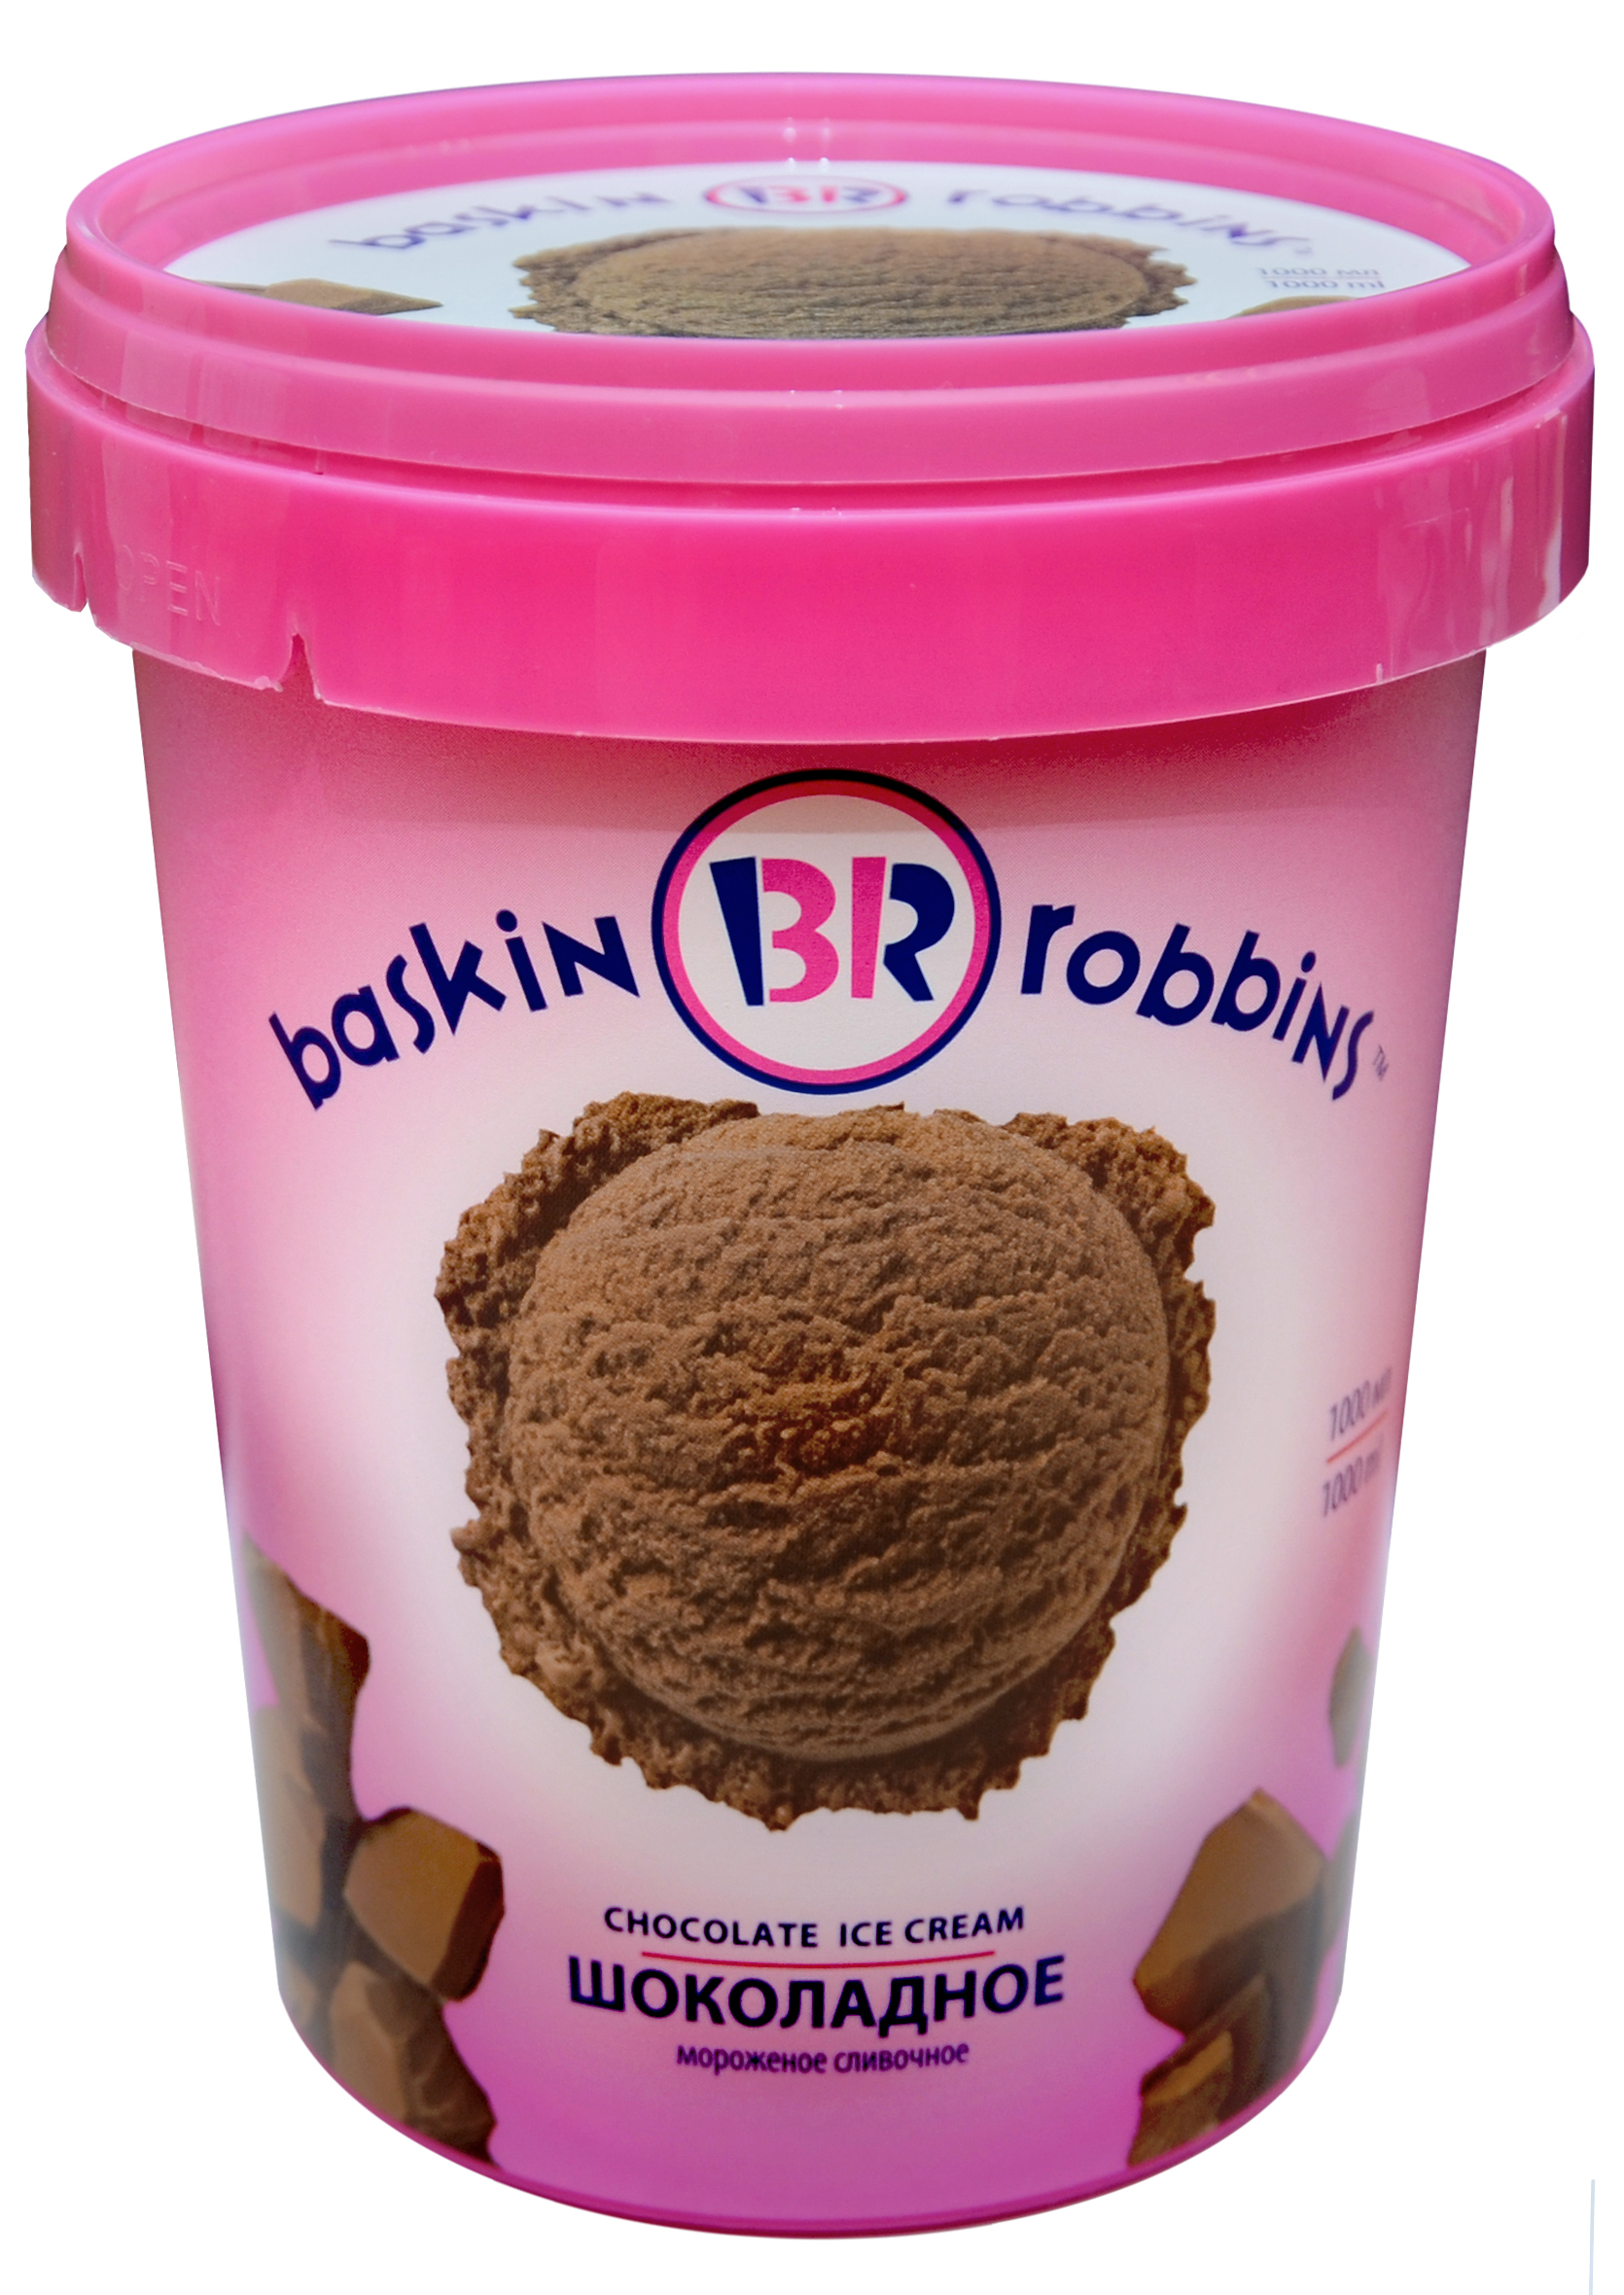 Купить мороженое омск. Баскин Роббинс шоколадное 1000 мл. Баскин Роббинс 600г. Мороженое Баскин Роббинс шоколадное 1000мл. Мороженое baskin Robbins шоколадное 1000 мл.